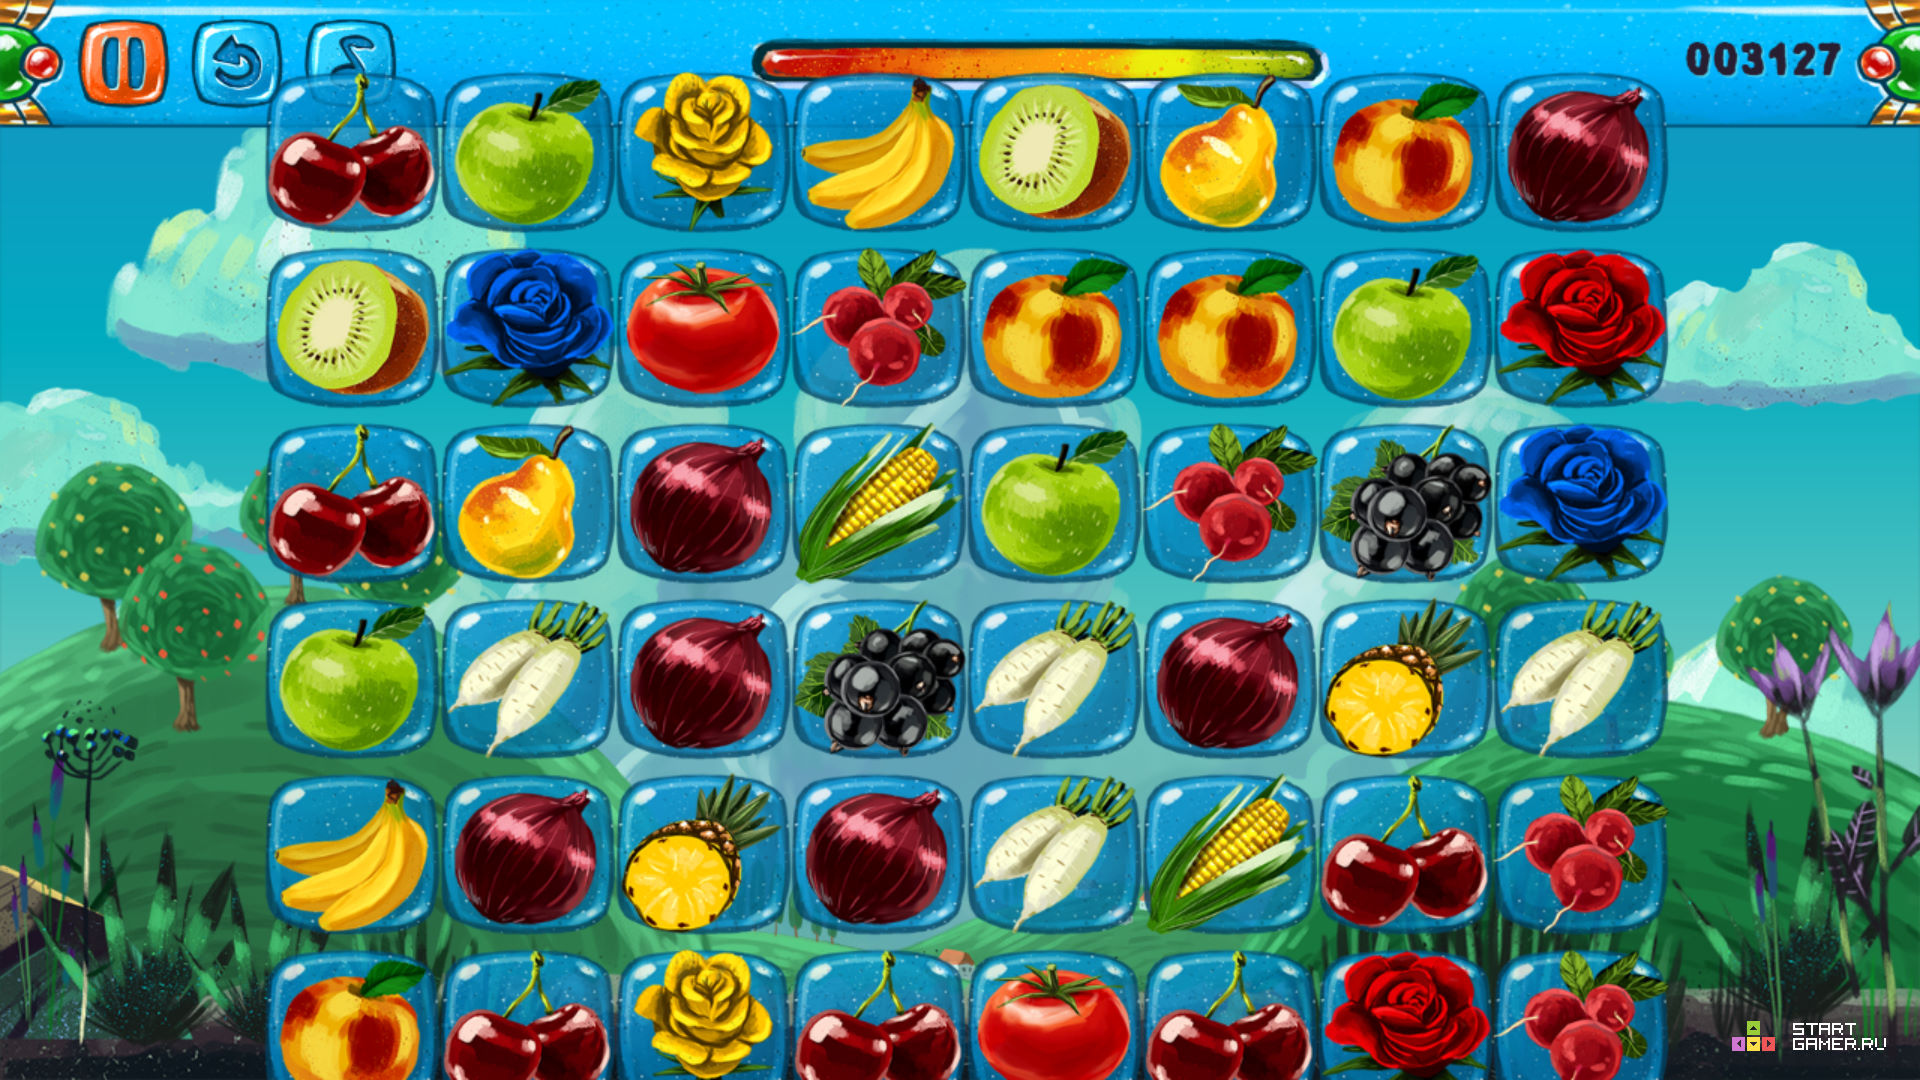 Блокс фрутс лист мечей. В2 фрукты Блокс Фрутс. Игра Fruit connect 2. Игра Маджонг овощи и фрукты 1. Фрукты в игре Блокс Фрут.